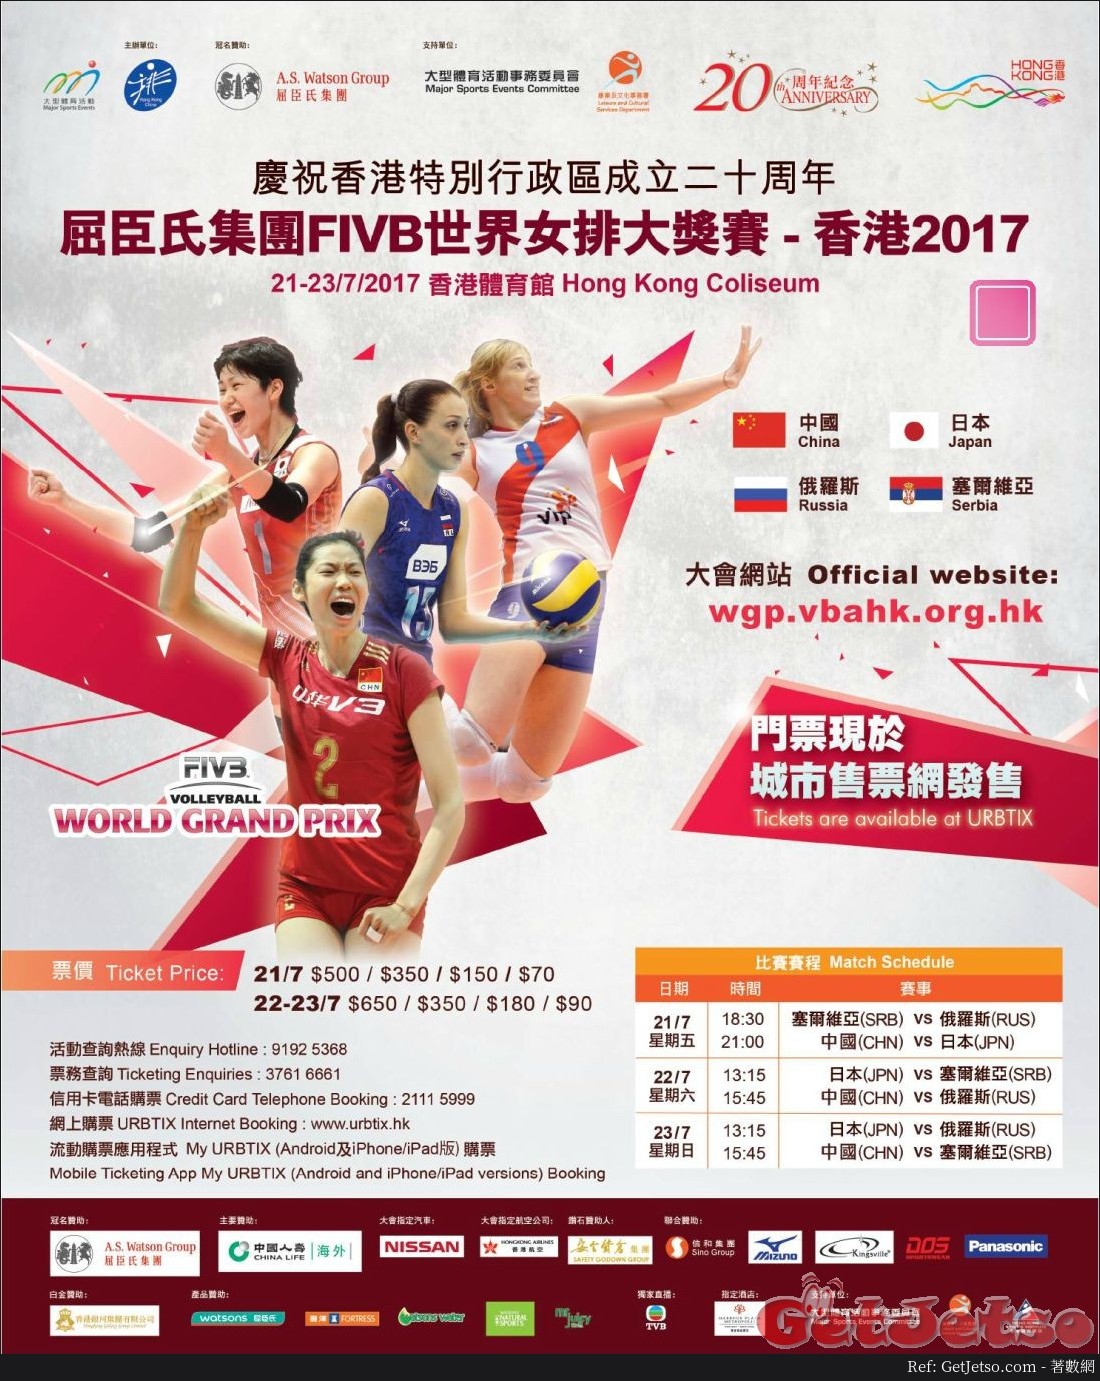 屈臣氏集團FIVB世界女排大獎賽香港2017門票公開發售圖片1